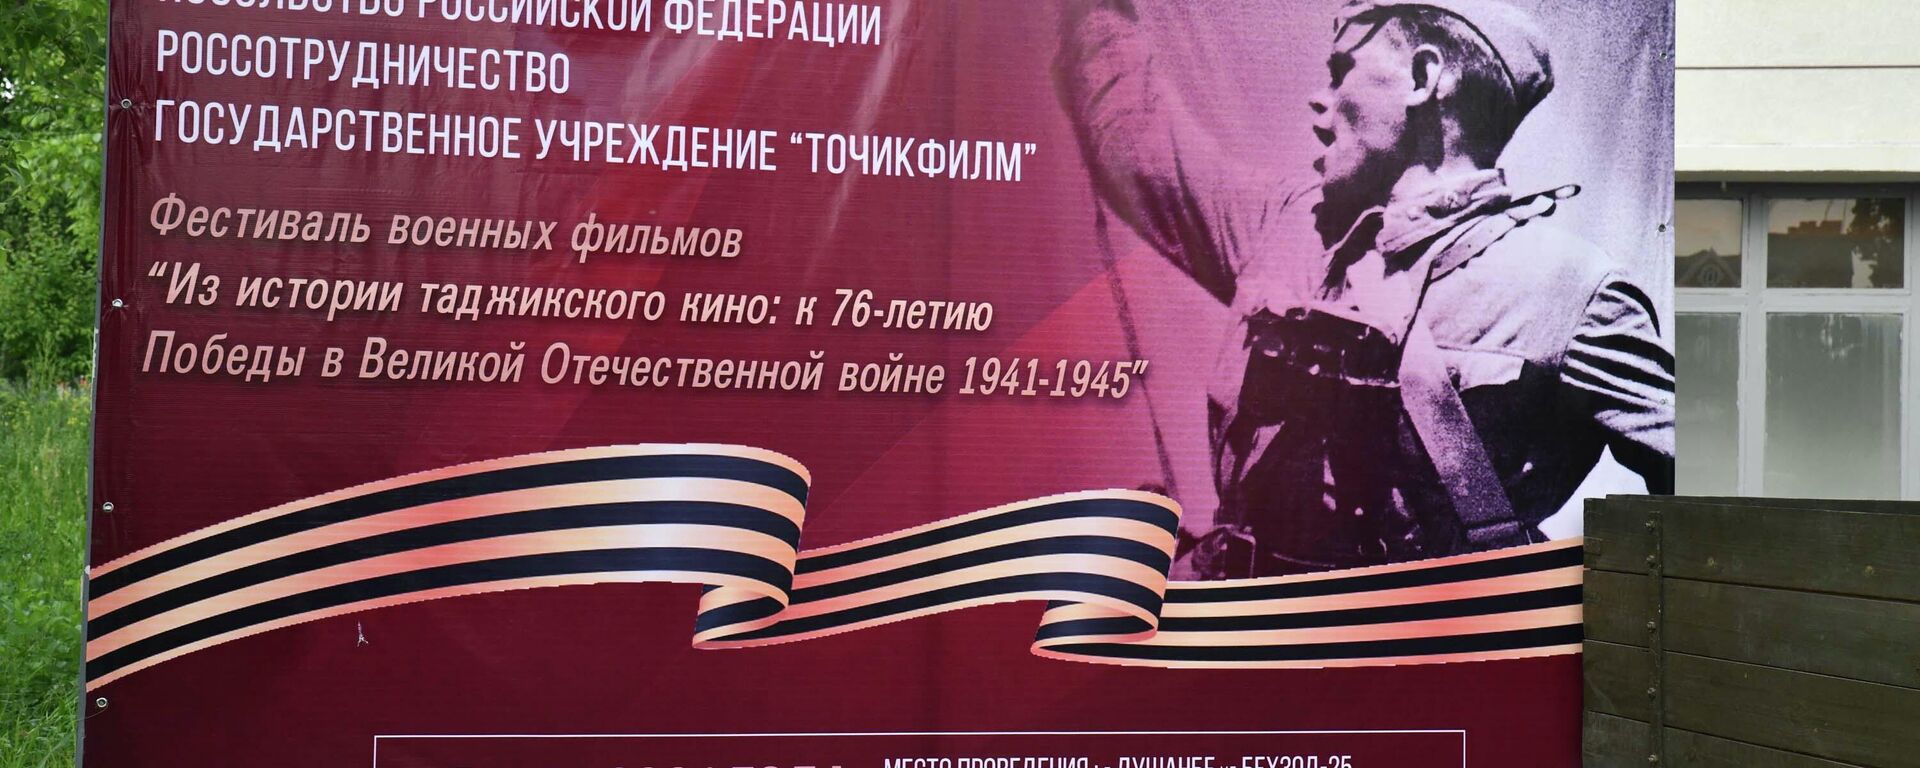 Открытие фестиваля военных фильмов - Sputnik Таджикистан, 1920, 04.05.2021